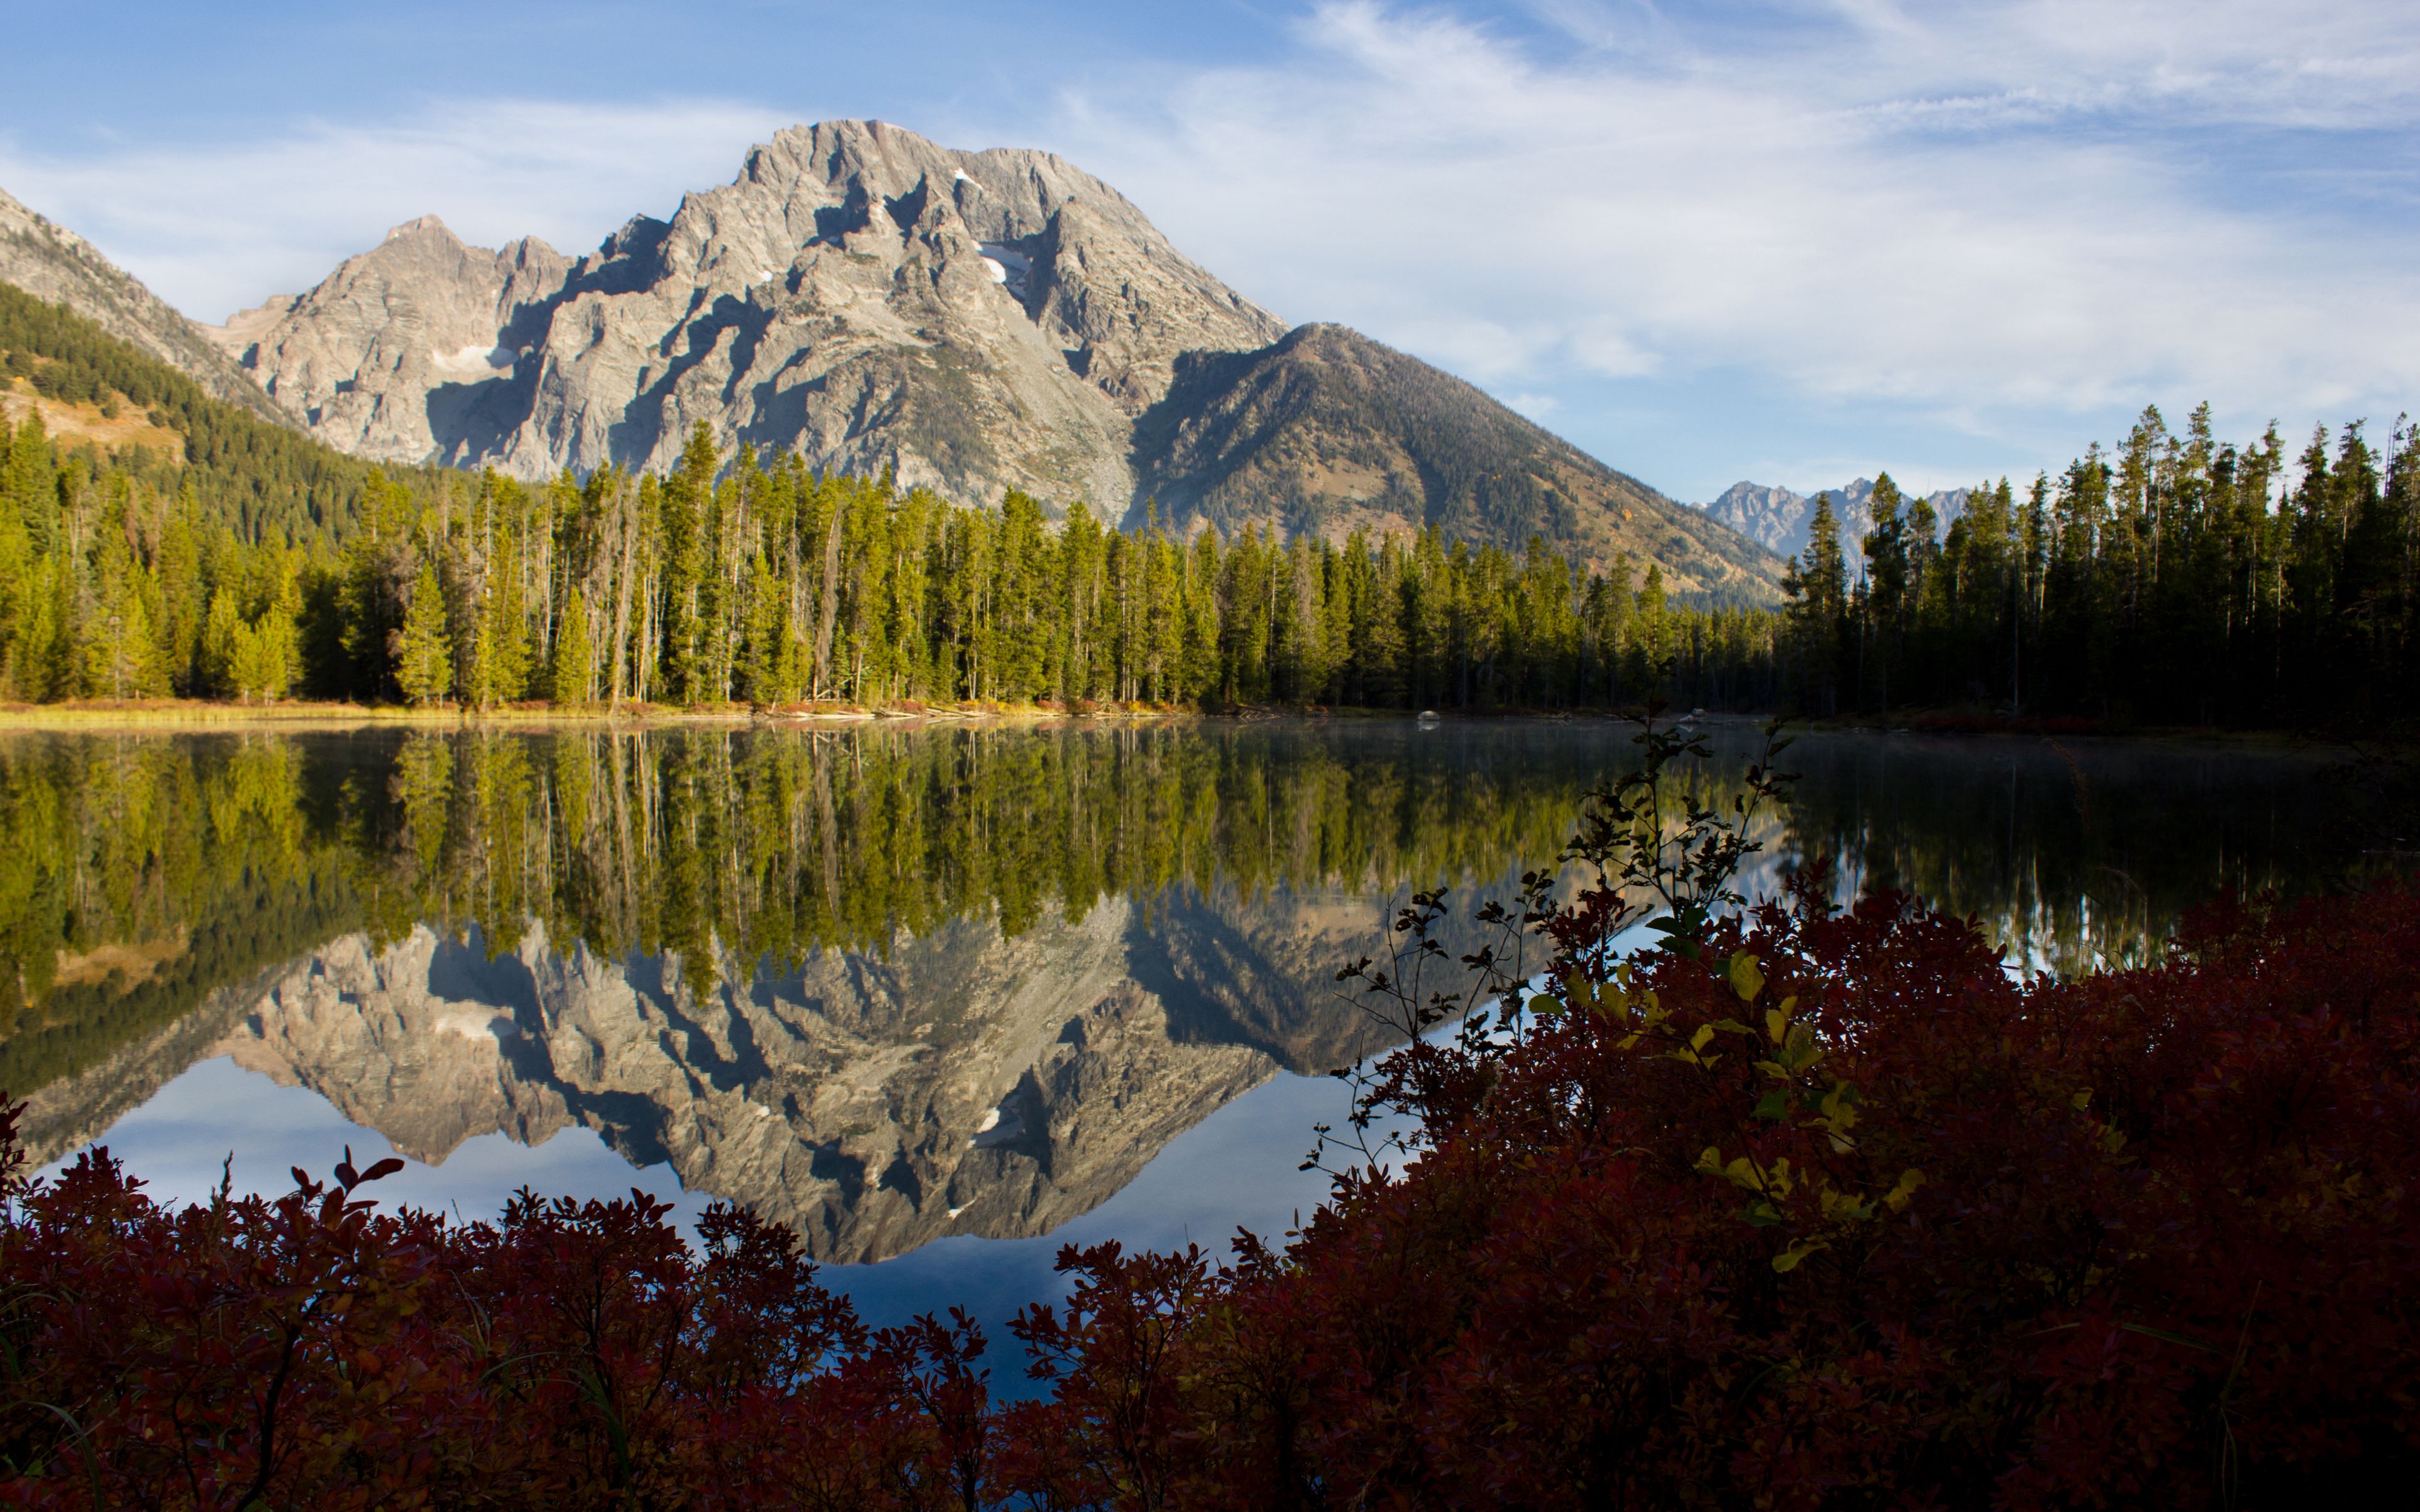 Fondos de pantalla Montaña reflejada en lago en el bosque